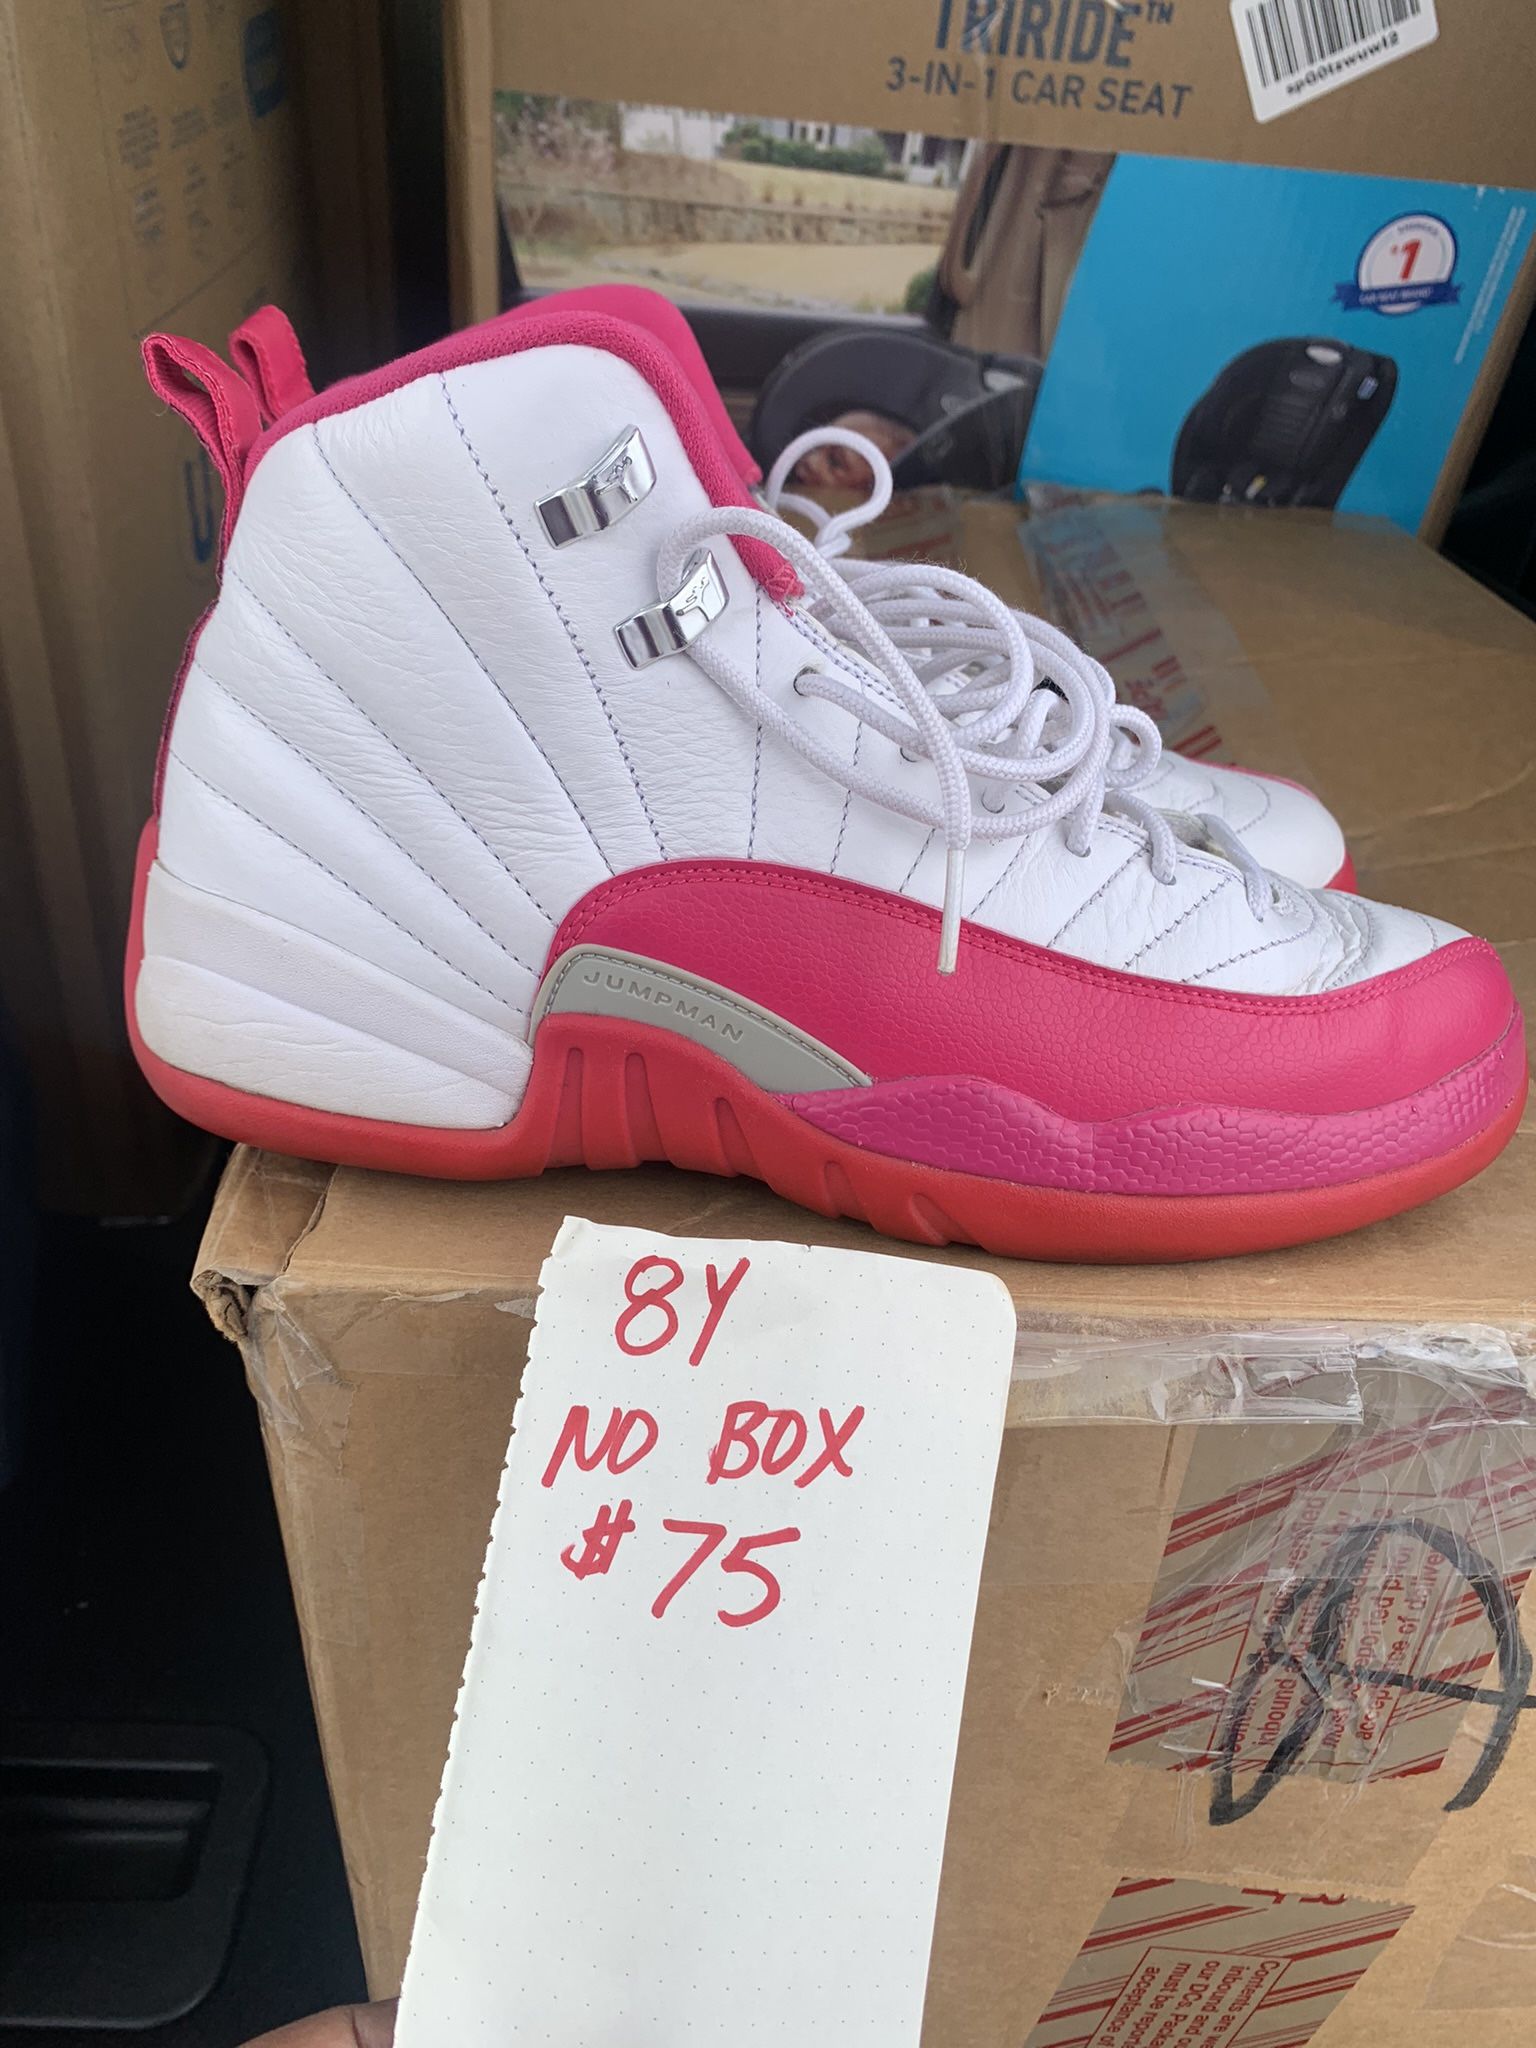 Jordan 12 Pink Size 8Y 